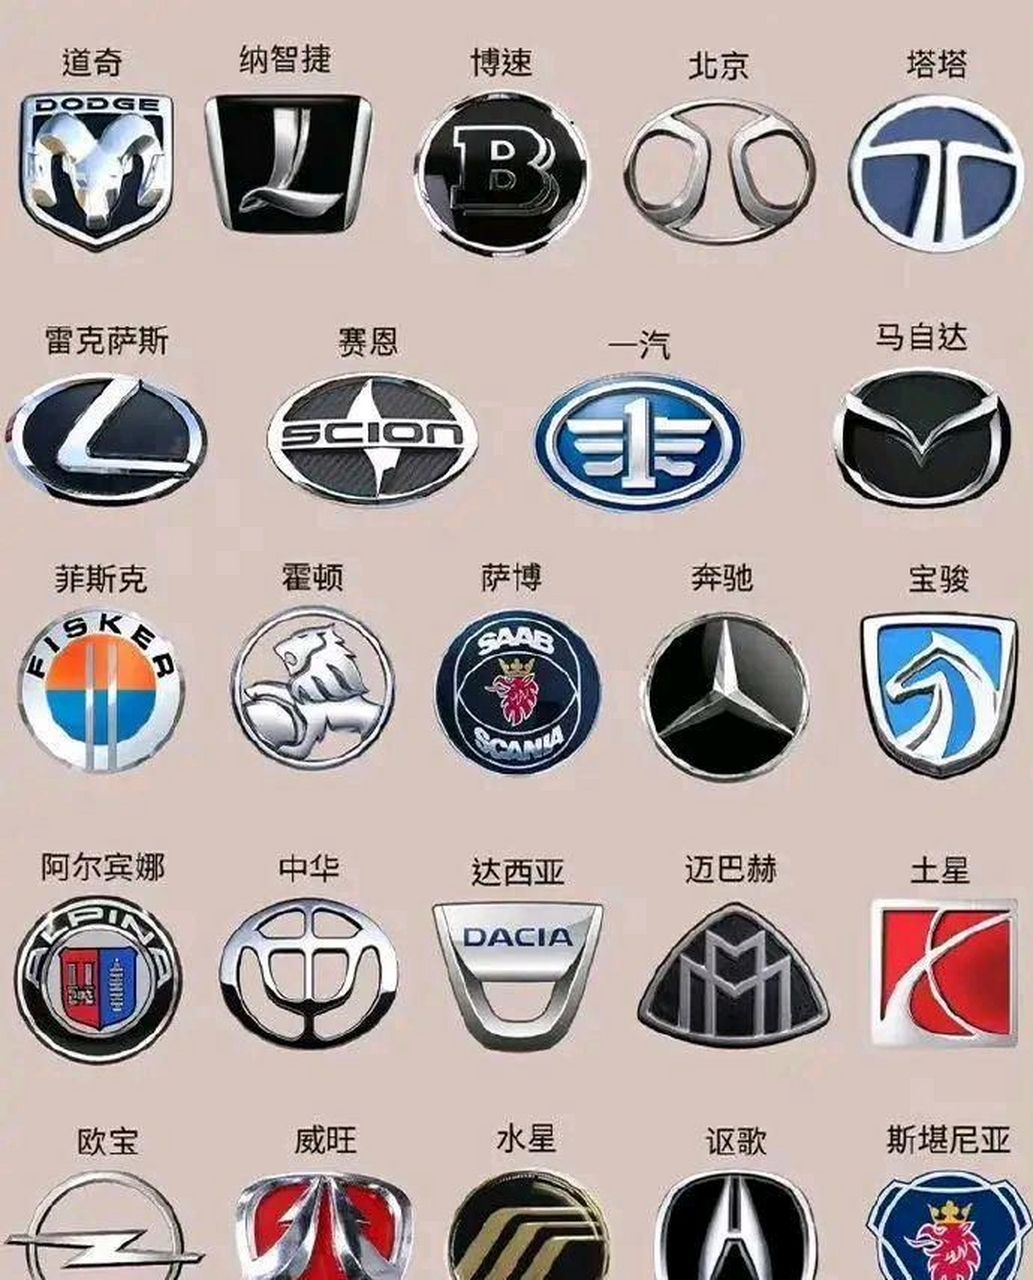 你认识每个汽车品牌的标志吗?